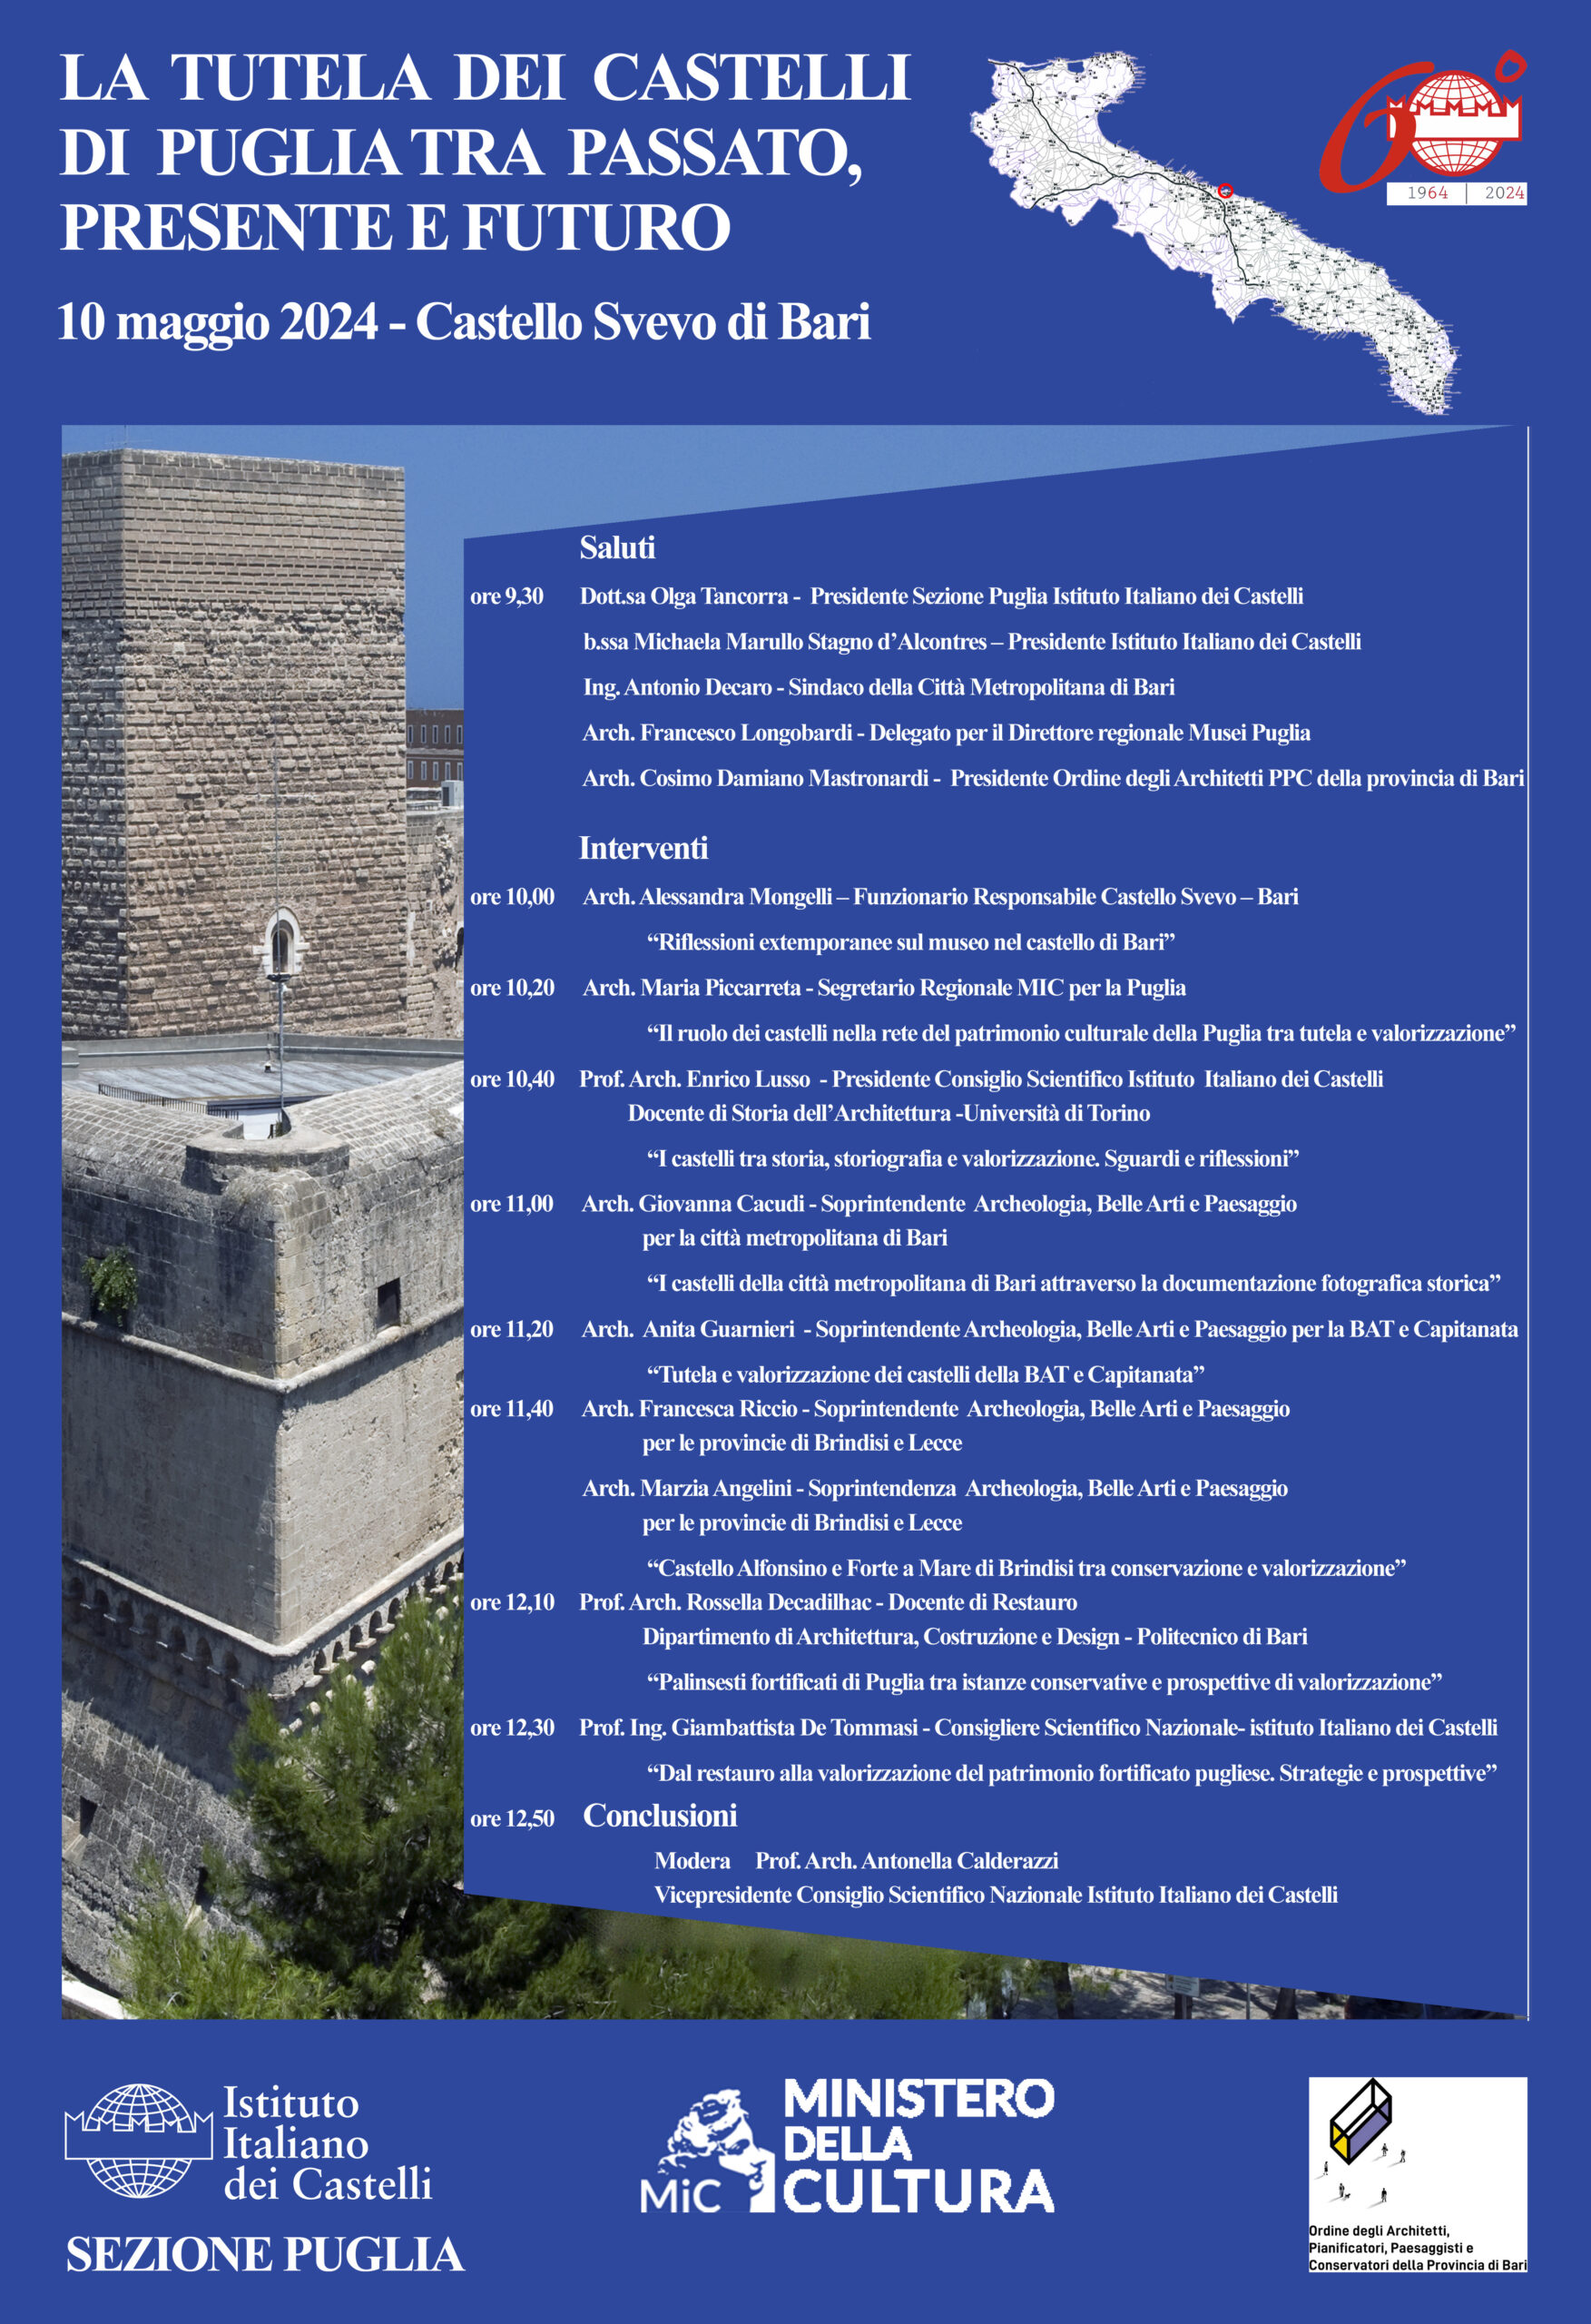 Celebrazione del 60° anniversario della fondazione dell’Istituto Italiano dei Castelli